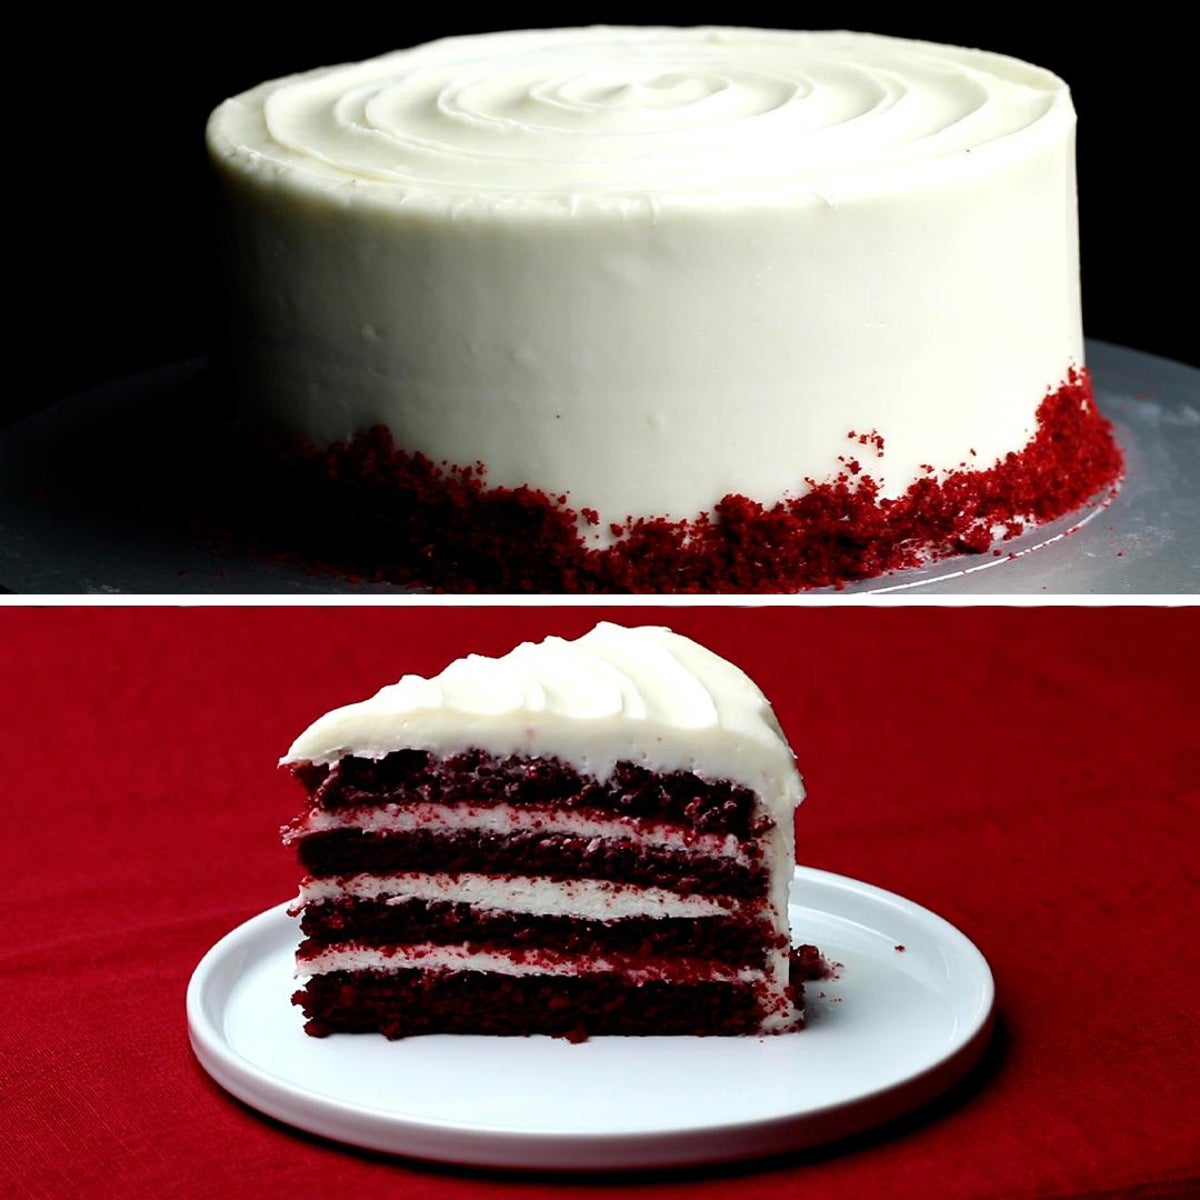 Full 4k Collection Of Over 999 Stunning Red Velvet Cake Images